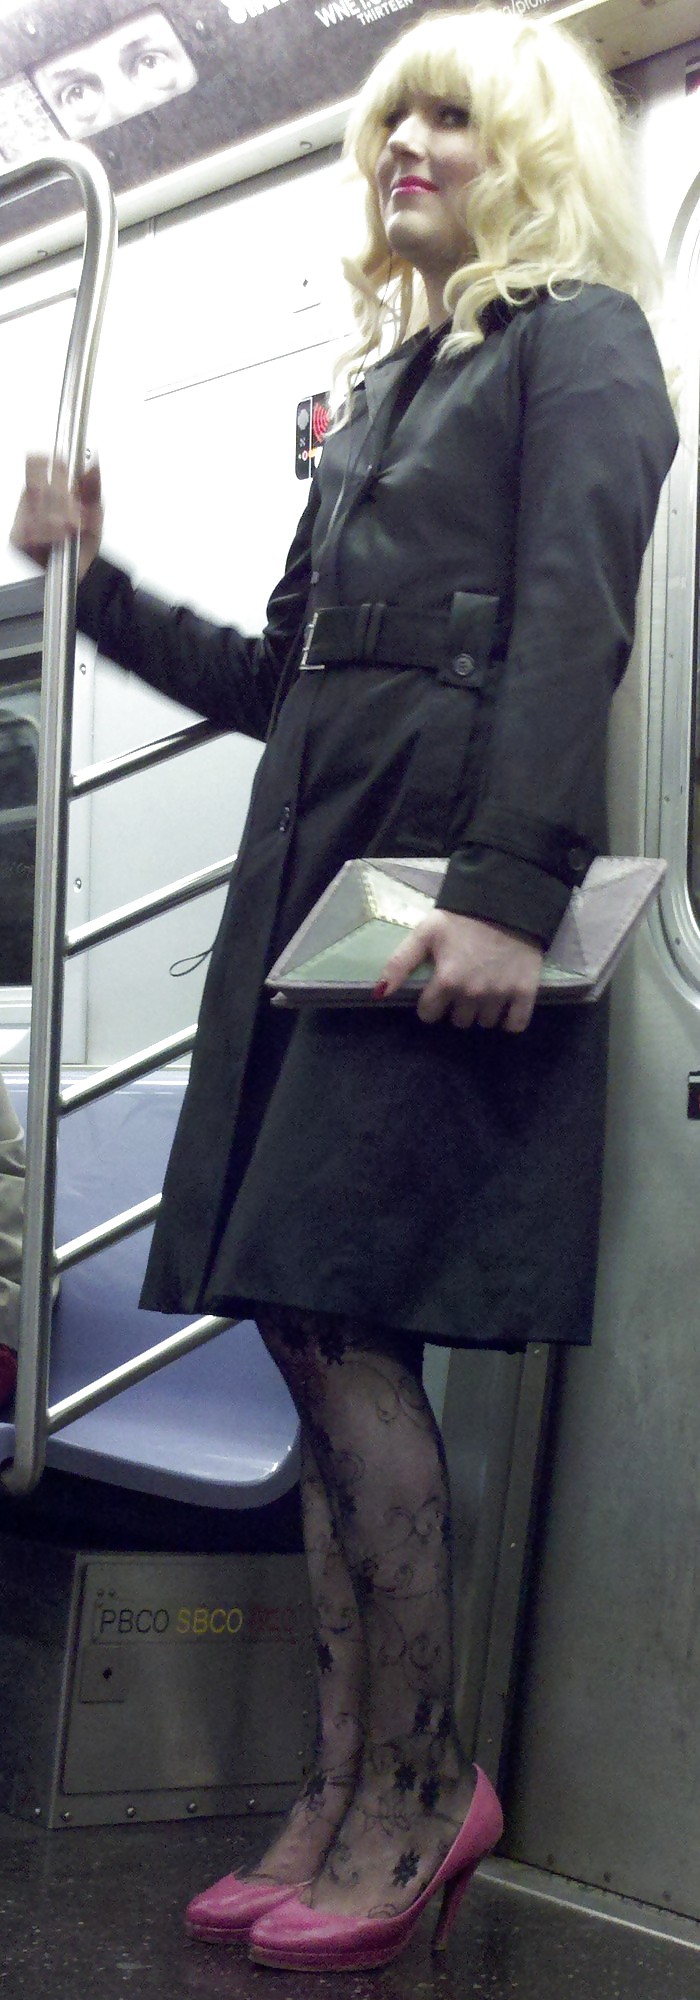 ニューヨークの地下鉄の女の子 107 dude looks like a lady
 #6603938